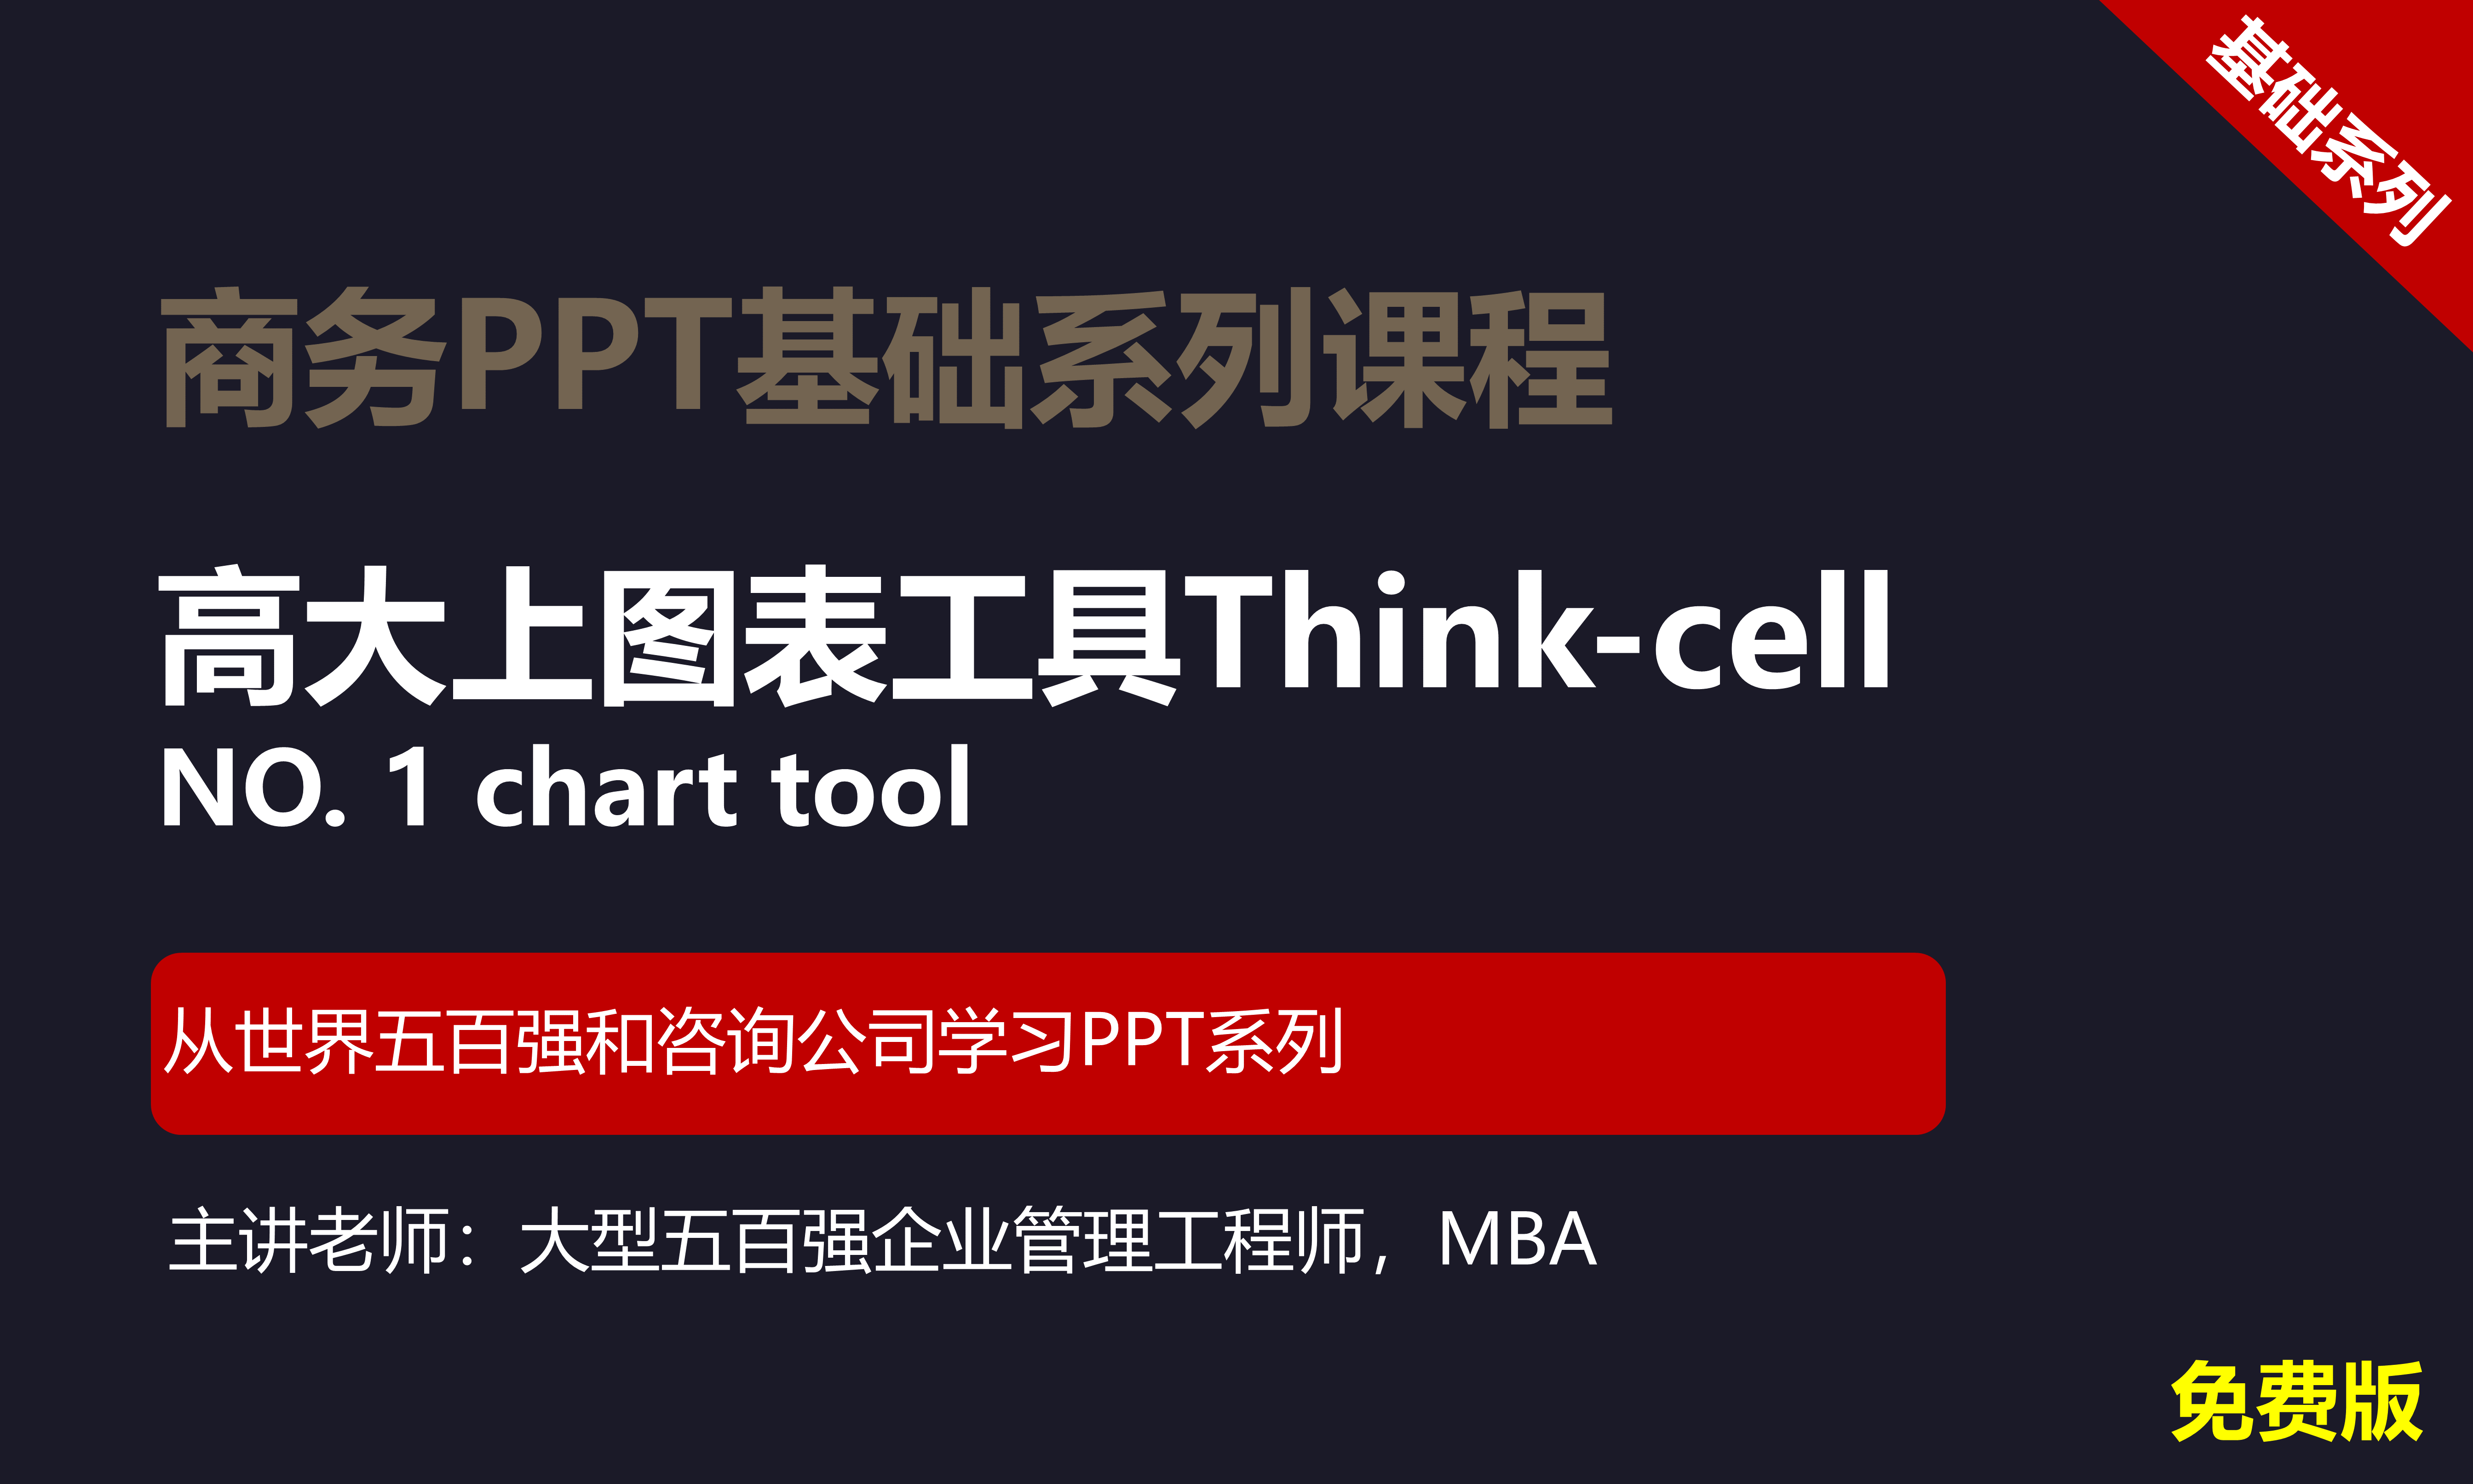 【司马懿】商务PPT设计基础篇05【高大上的图表工具Thinkcell】免费版